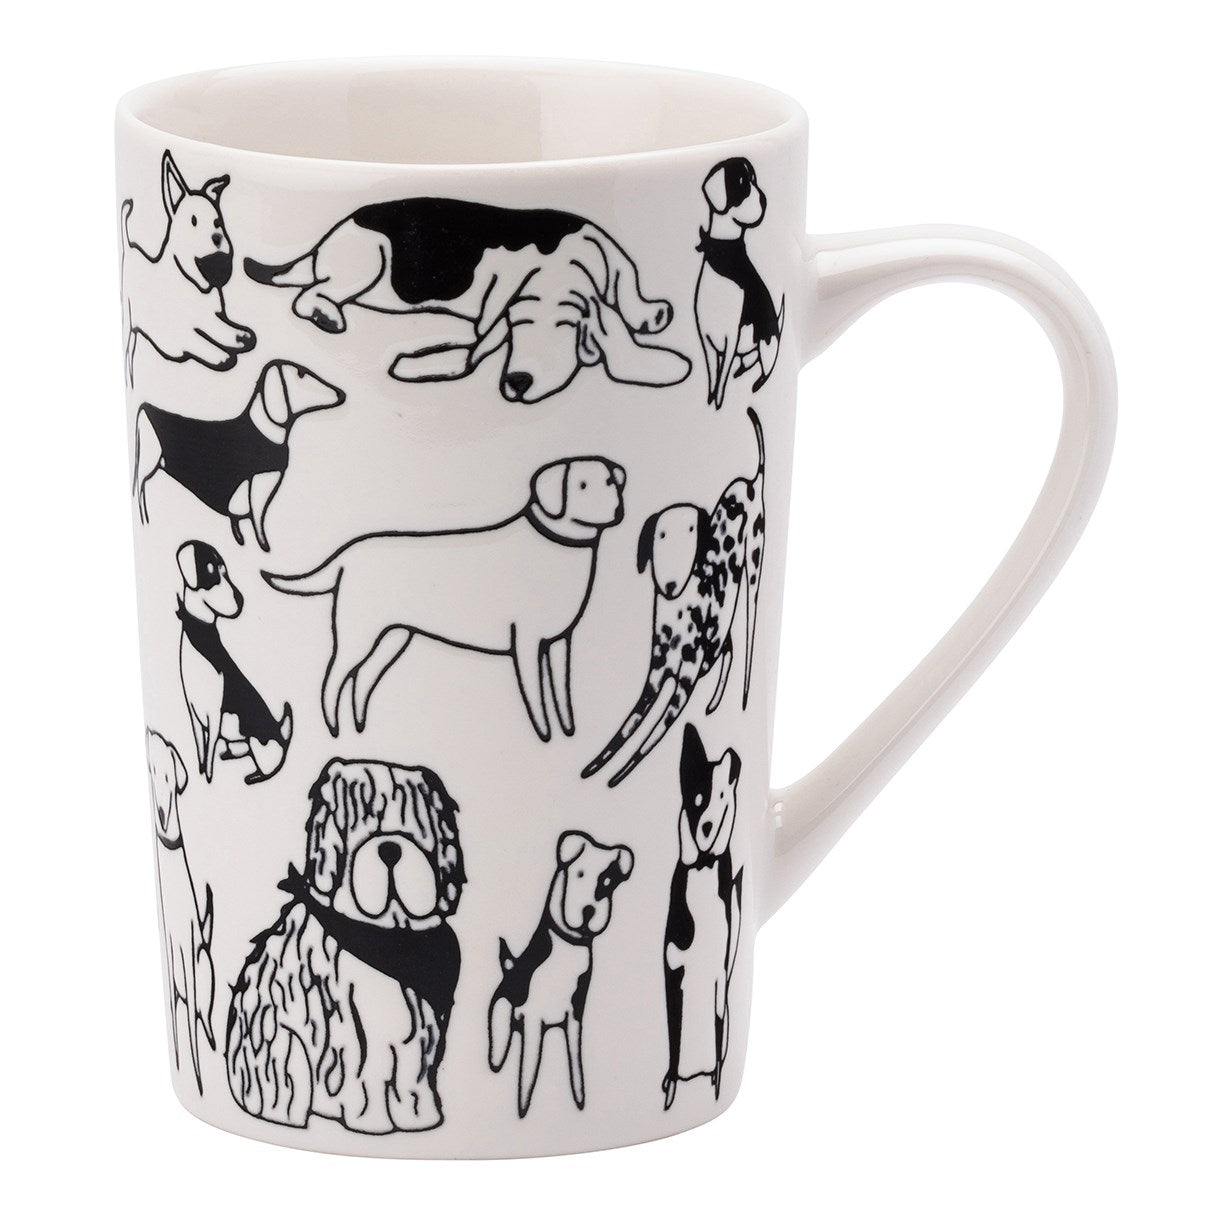 The English Tableware Company Playful Pets Tall Dog Mug